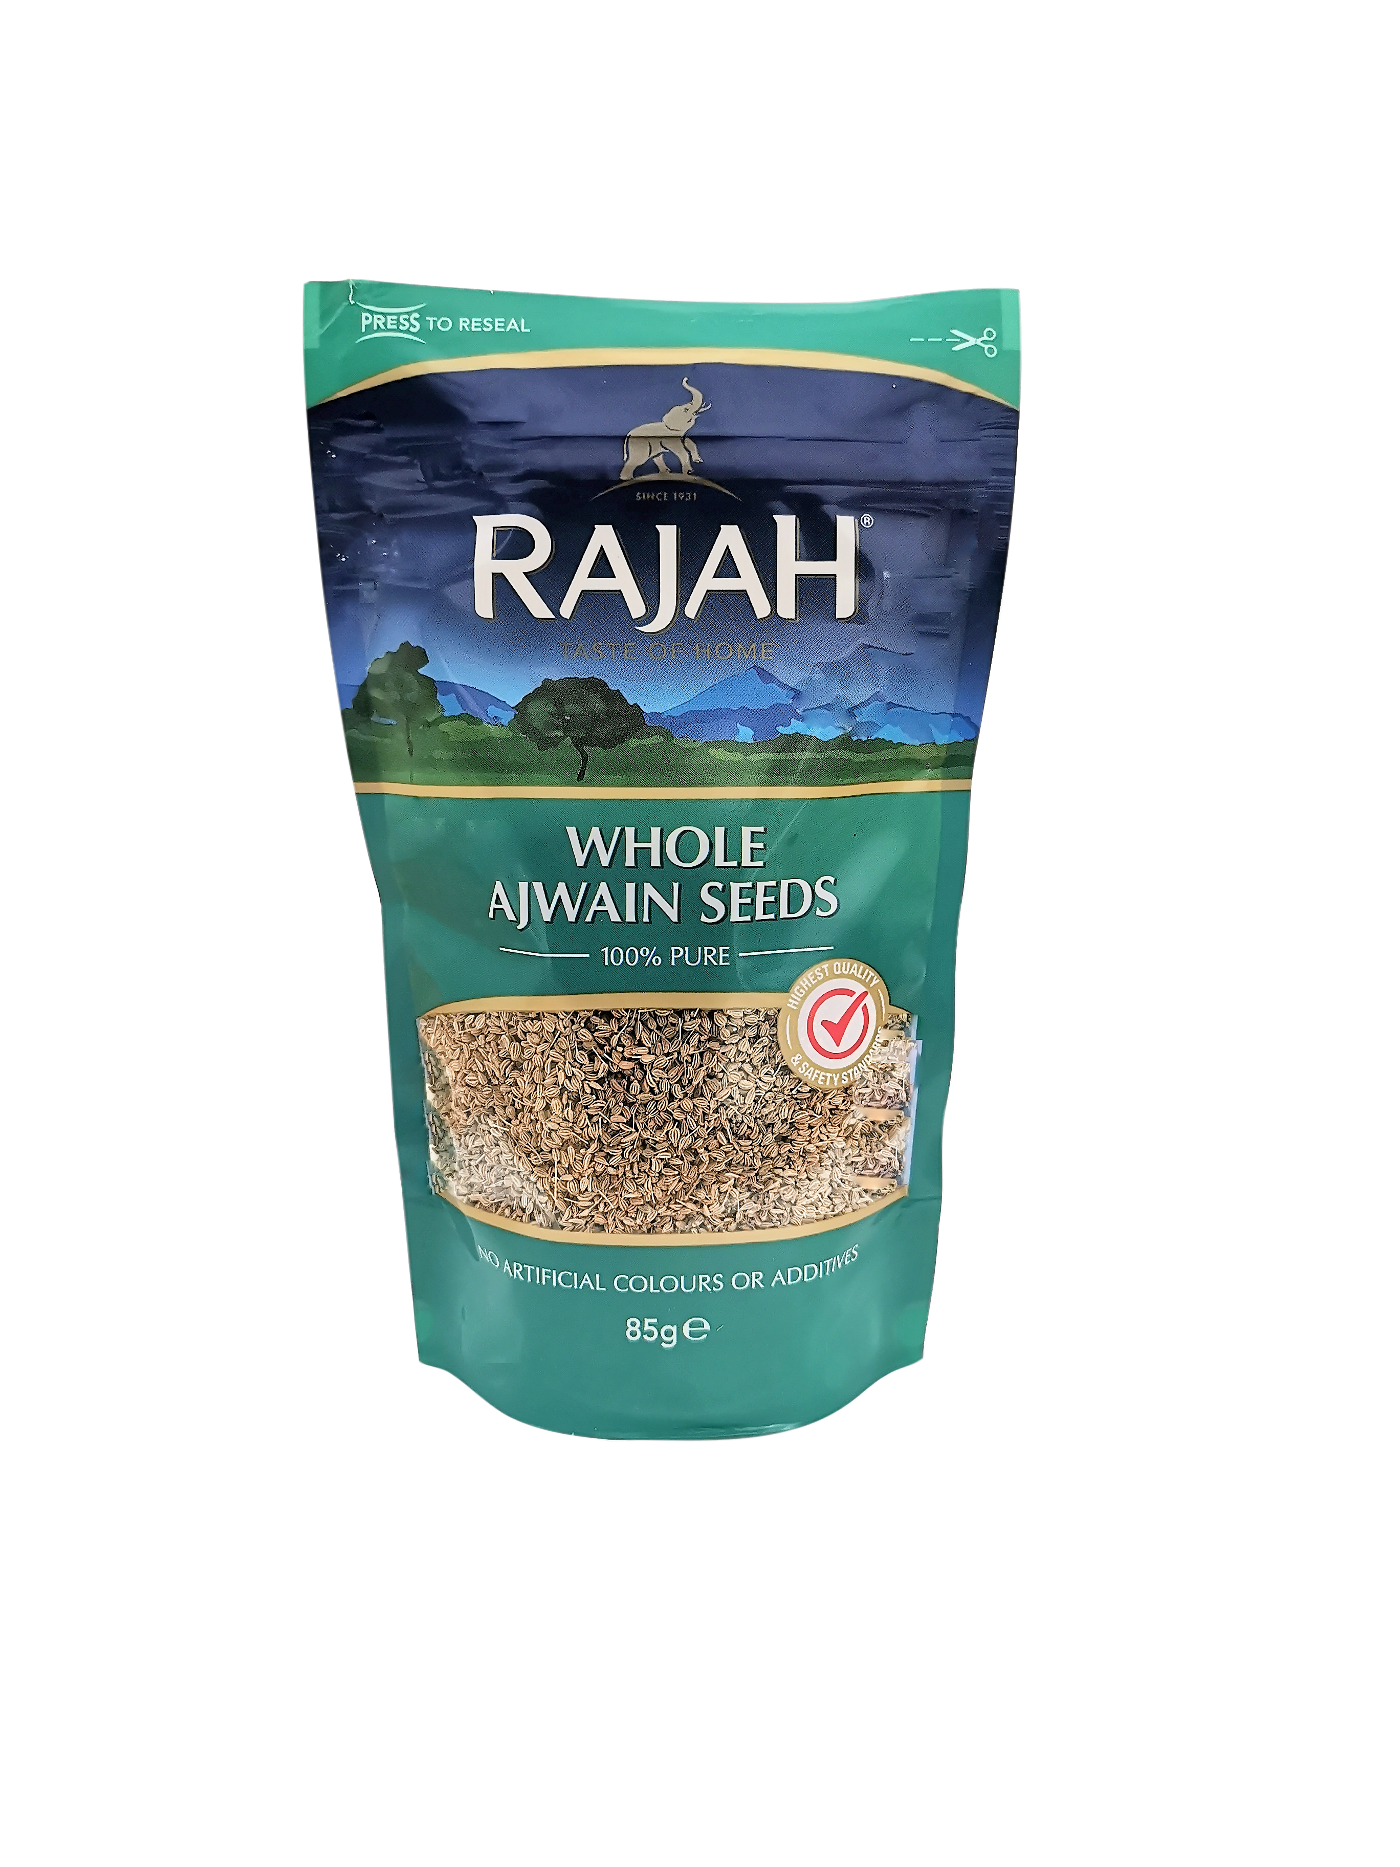 Rajah Whole Ajwain Seeds